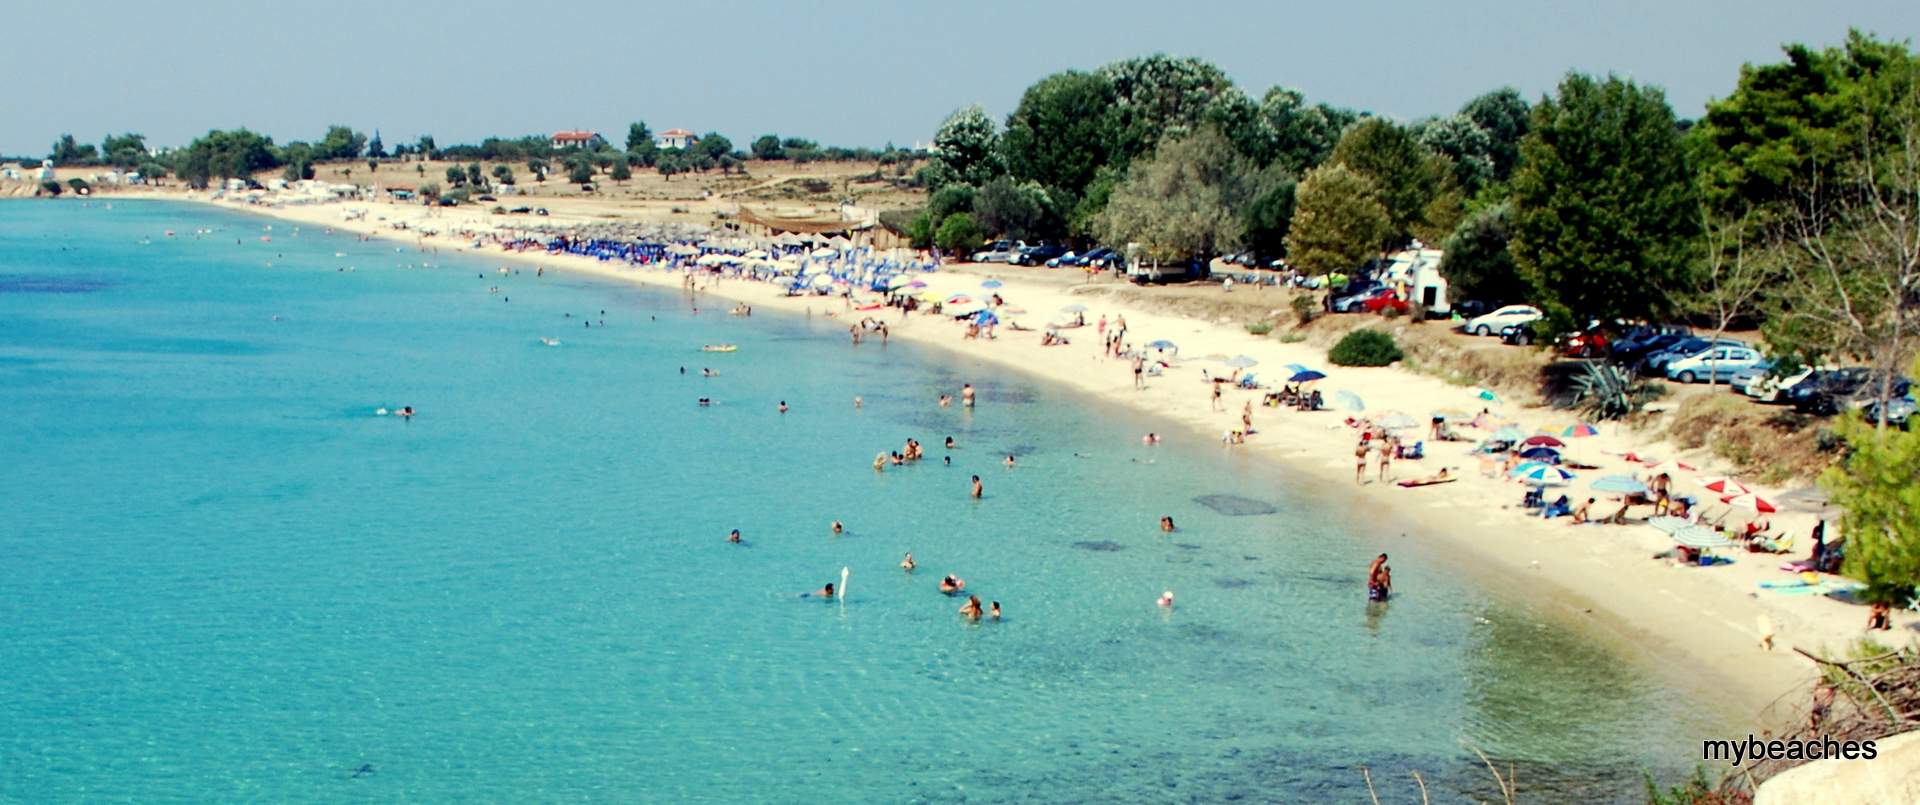 Αη-Γιάννης παραλία, Σιθωνία, Χαλκιδική, Ελλάδα